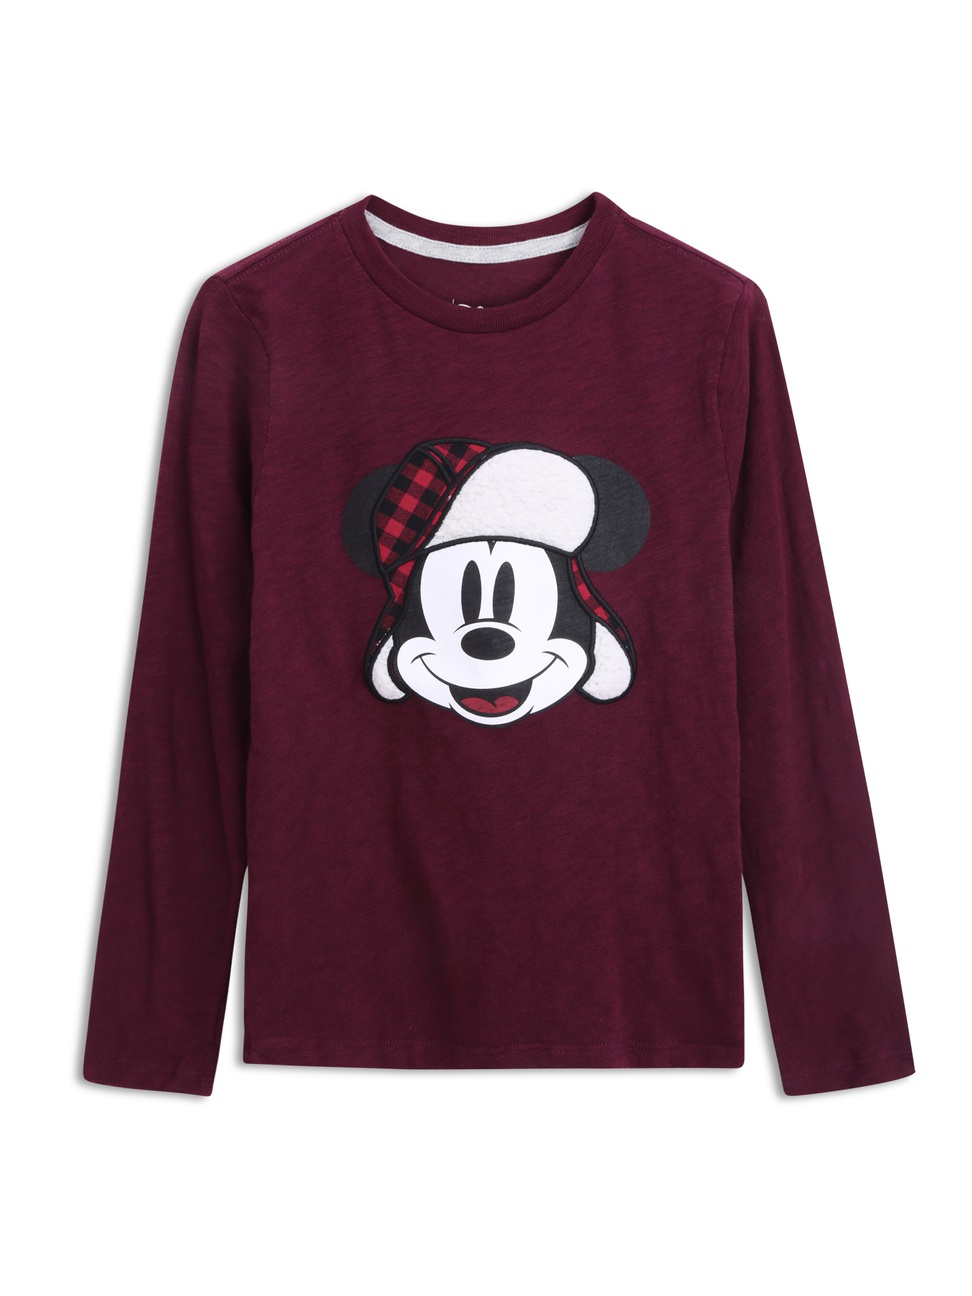 男童裝|Gap x Disney迪士尼聯名 米奇圓領長袖T恤-酒紅色